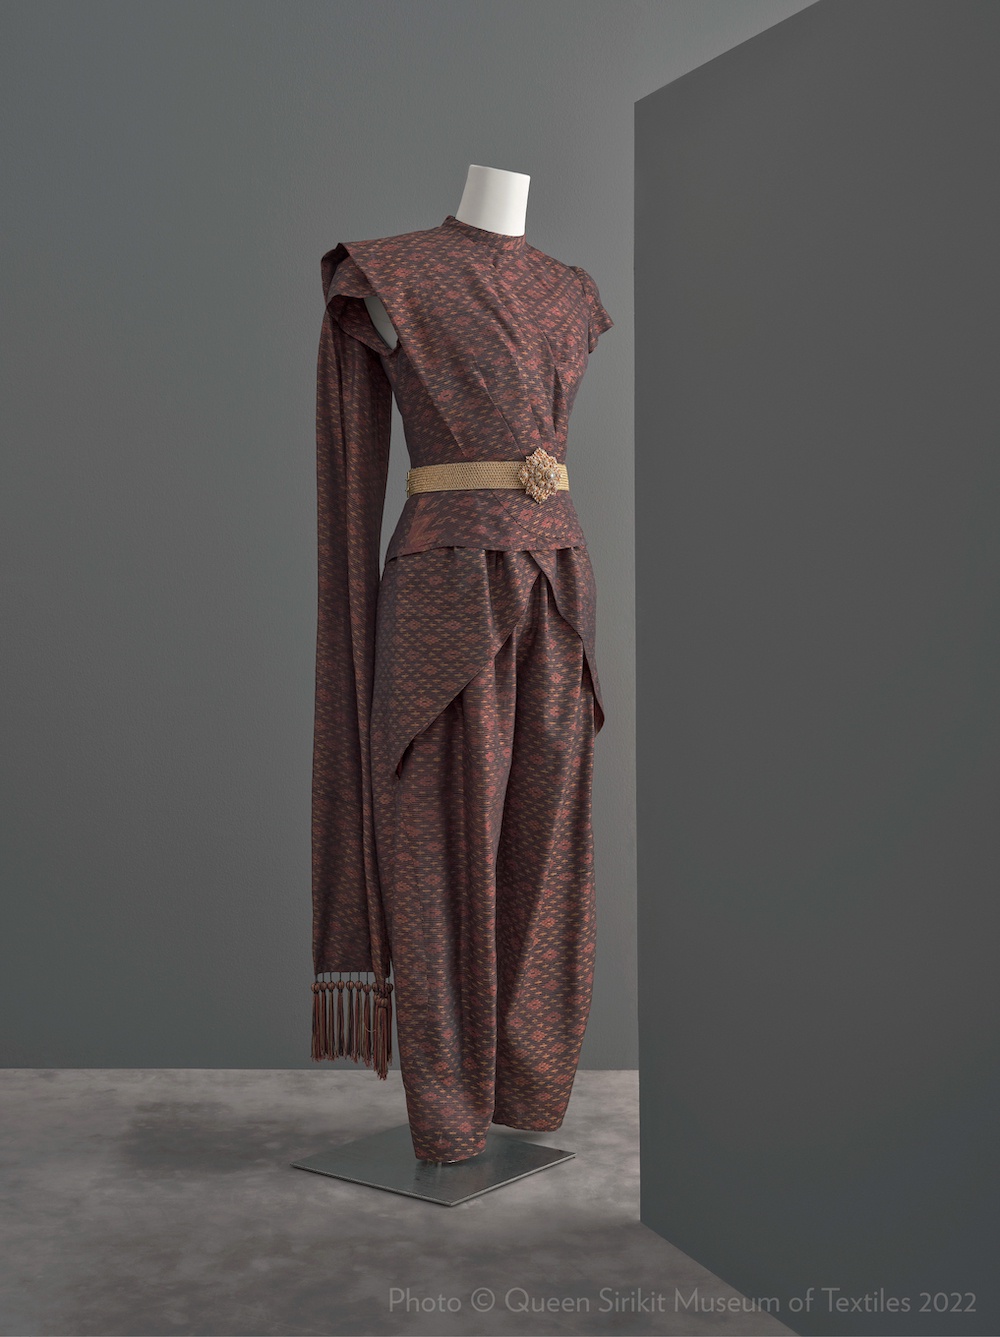 พิพิธภัณฑ์ผ้าฯ ชวนชม 12 ฉลองพระองค์ไฮไลท์ 5 ยุคสมัย ใน สิริราชพัสตราบรมราชินีนาถ